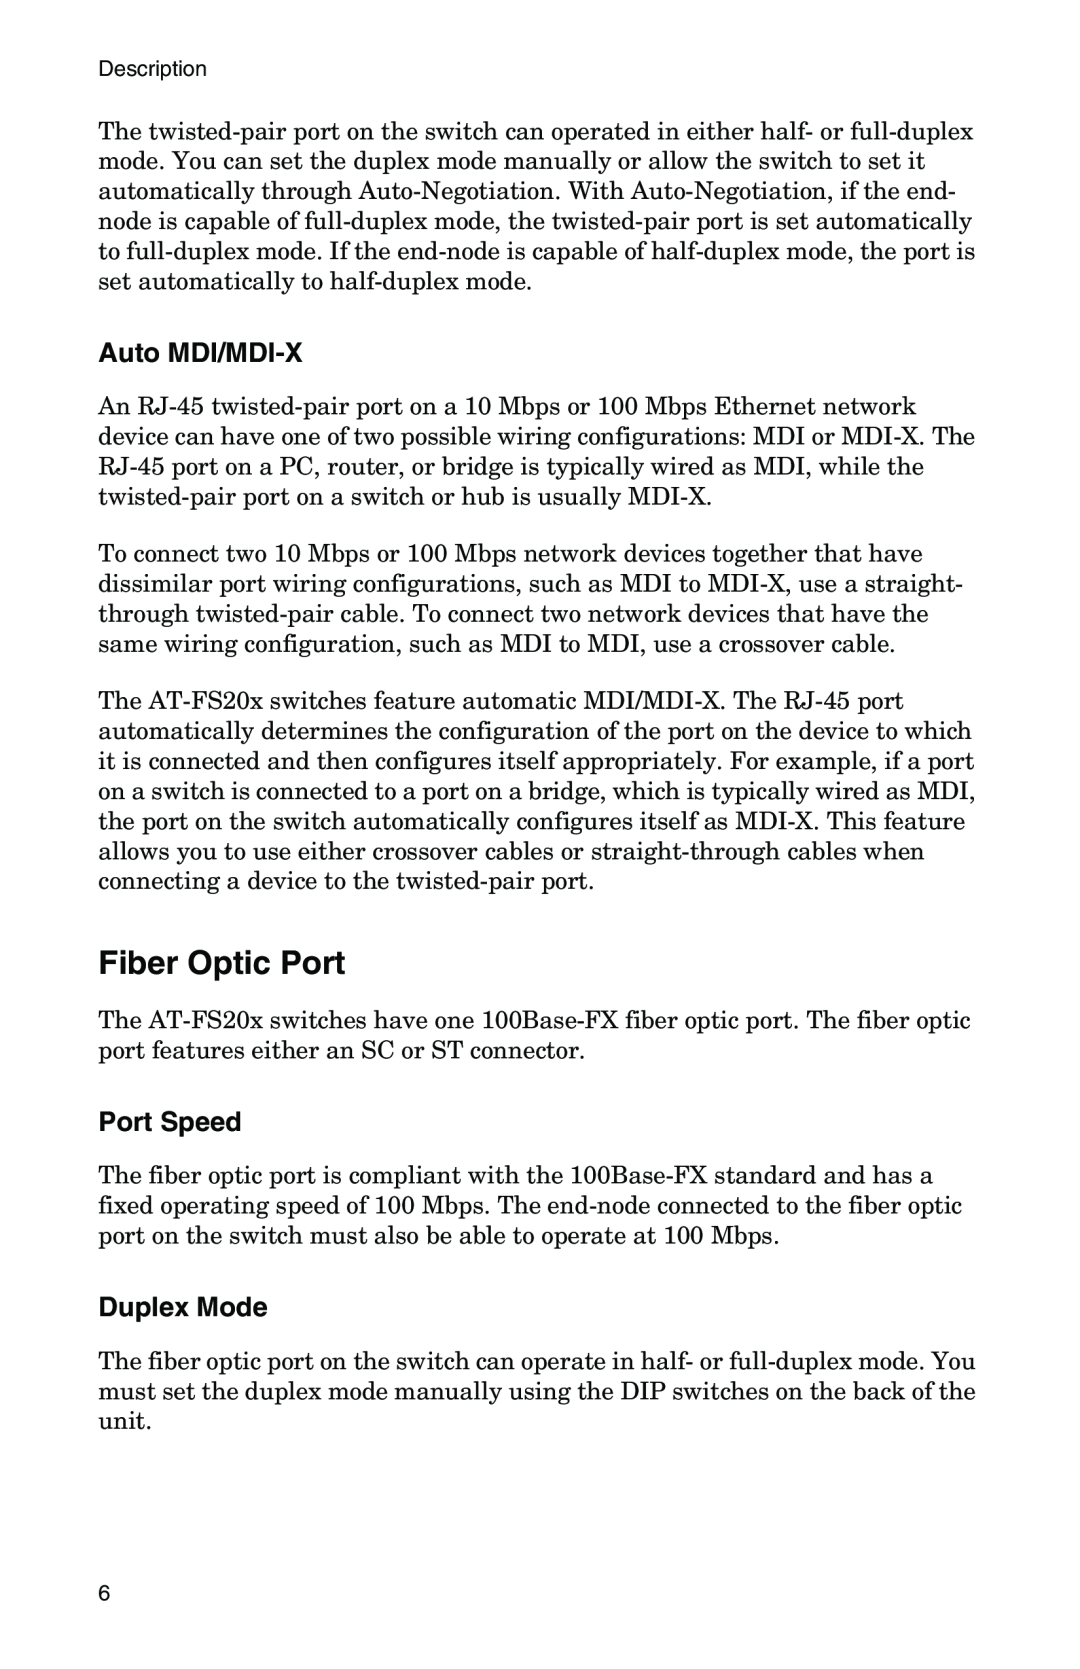 IBM AT-FS202SC/FS1, AT-FS202SC/FS2, AT-FS202SC/FS4, AT-FS201 manual Fiber Optic Port, Auto MDI/MDI-X, Port Speed, Duplex Mode 